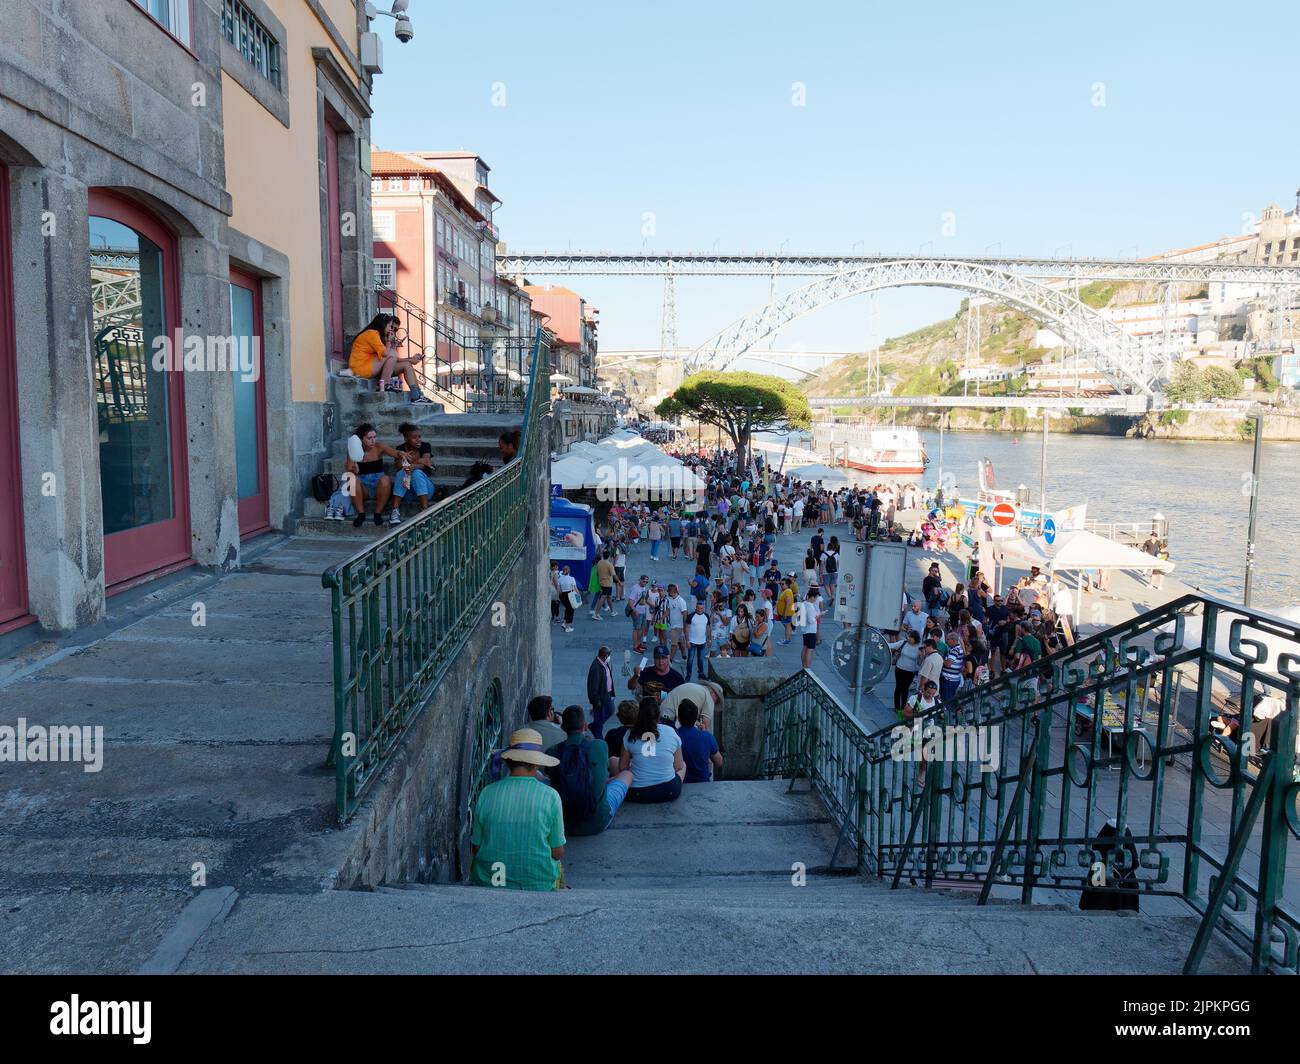 Les gens se détendent sur les marches de la Ribeira aka quartier riverain de Porto, Portugal avec le fleuve Duoro sur la droite et le pont Luis I derrière. Banque D'Images